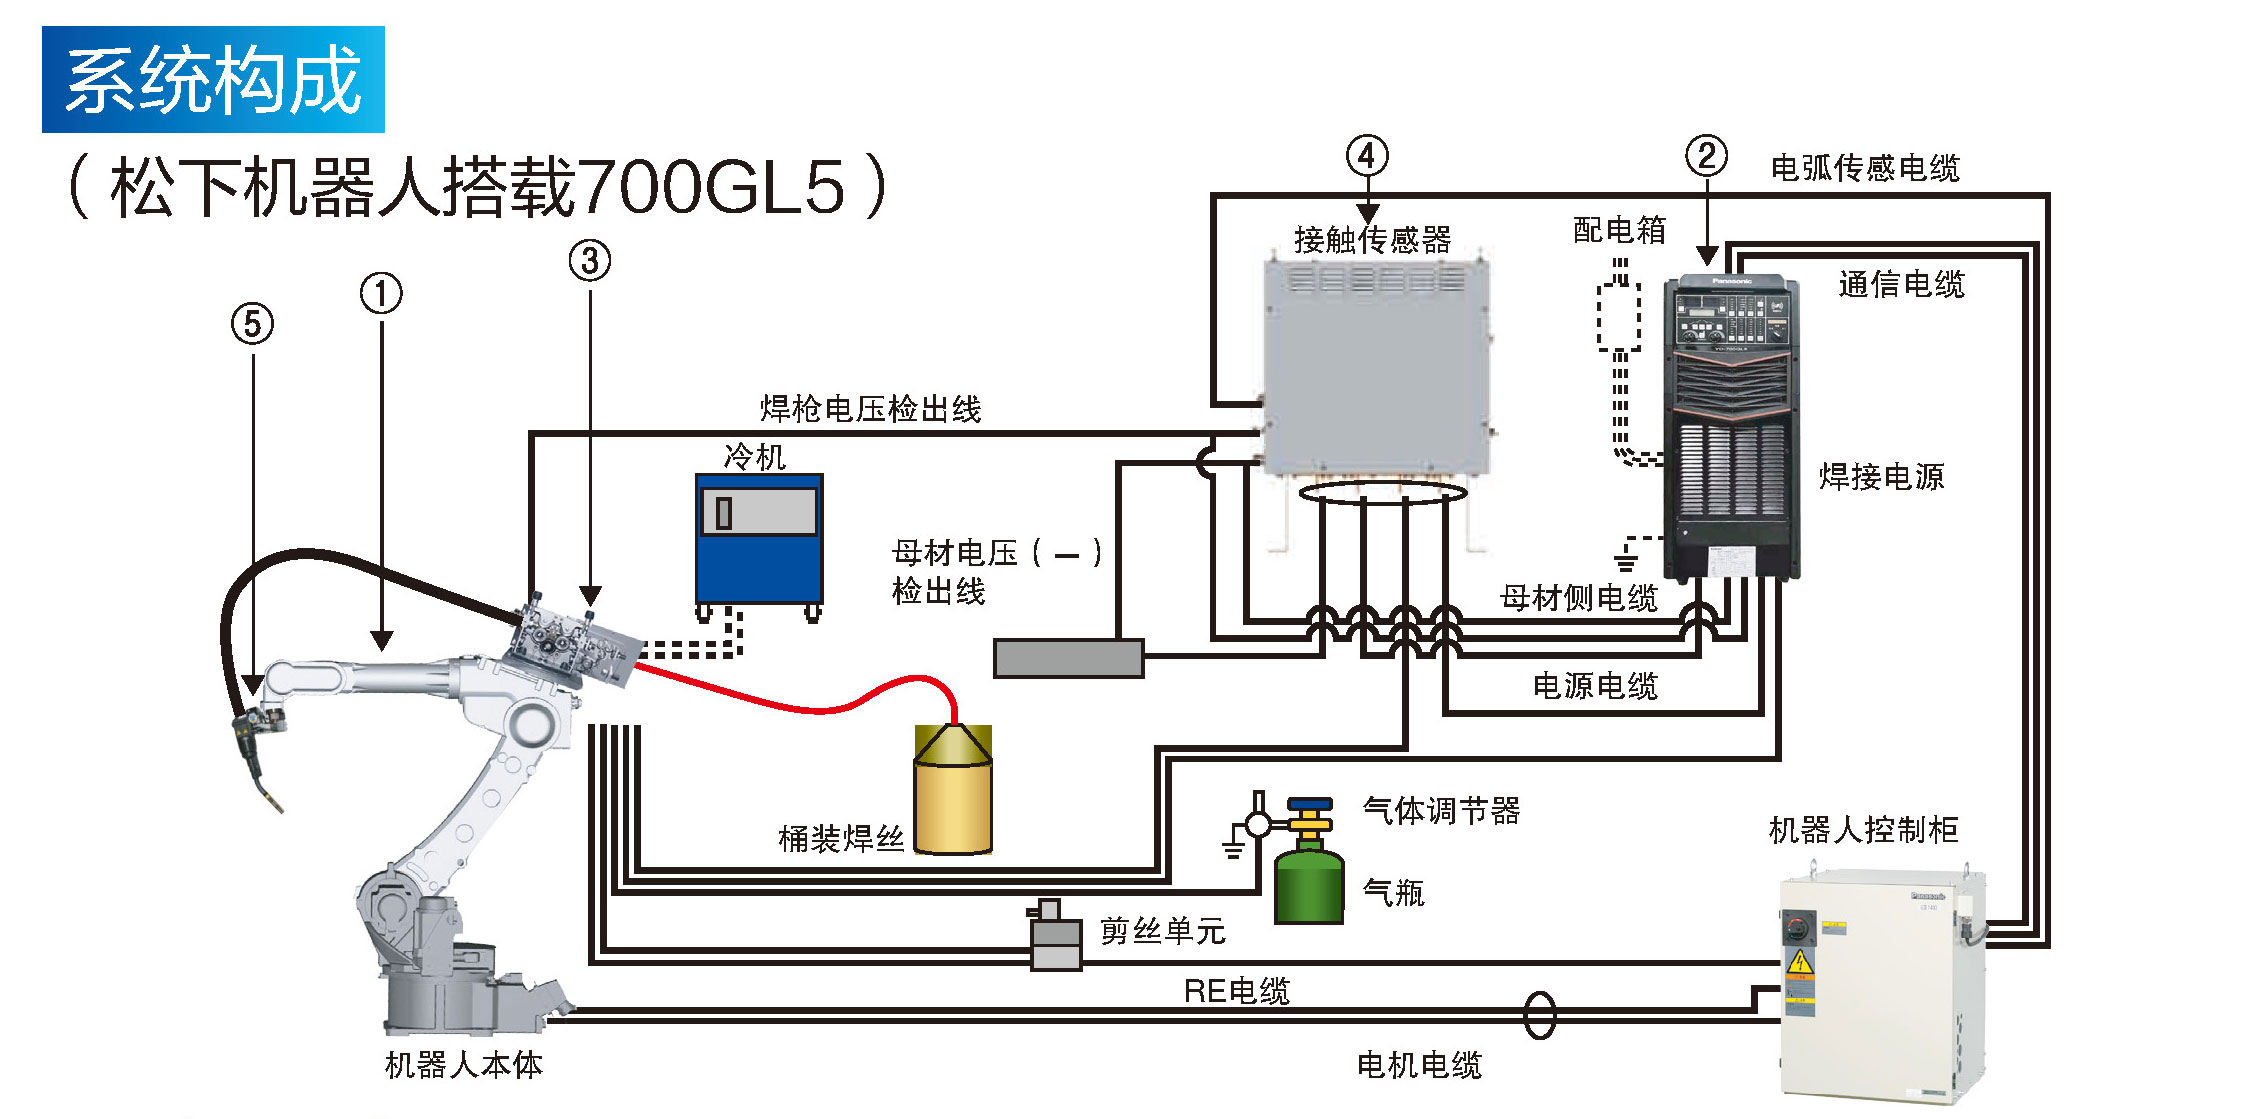 熔化极气保焊机(700GL5)(图4)